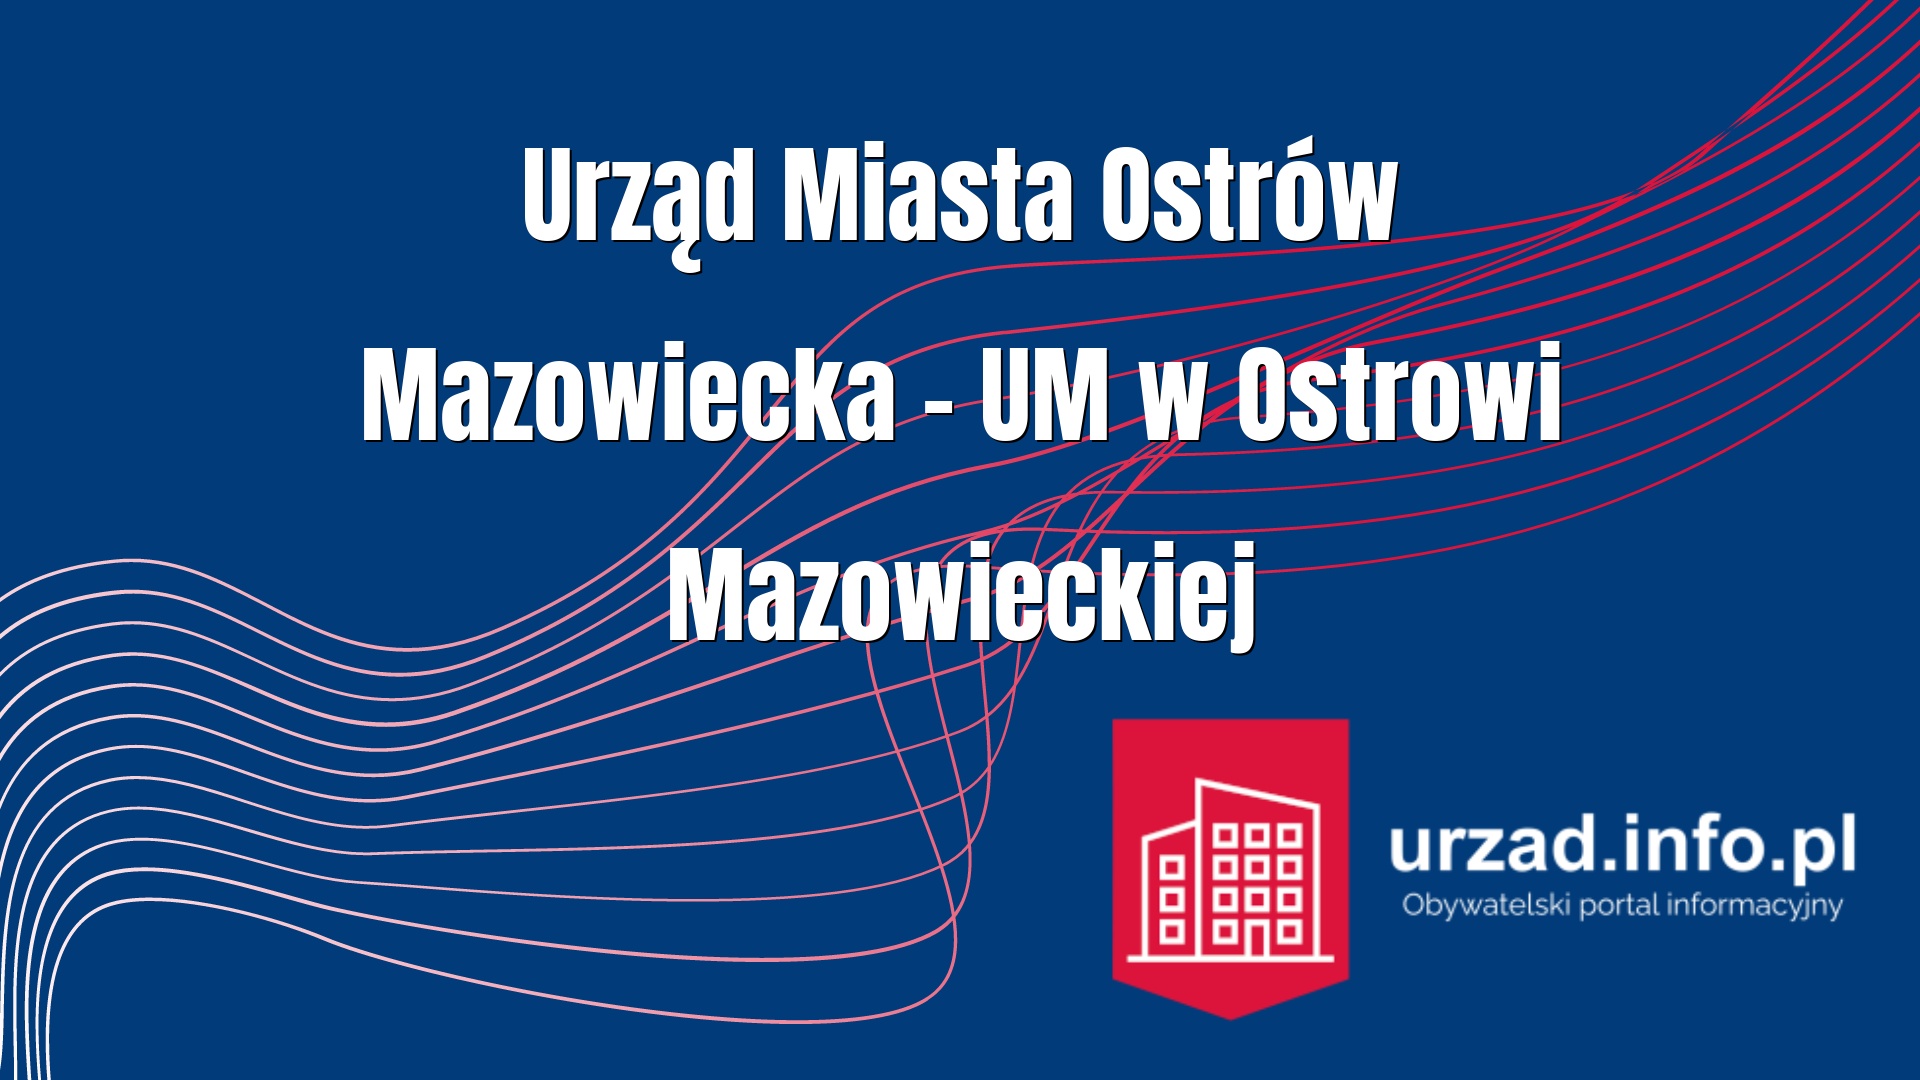 Urząd Miasta Ostrów Mazowiecka – UM w Ostrowi Mazowieckiej